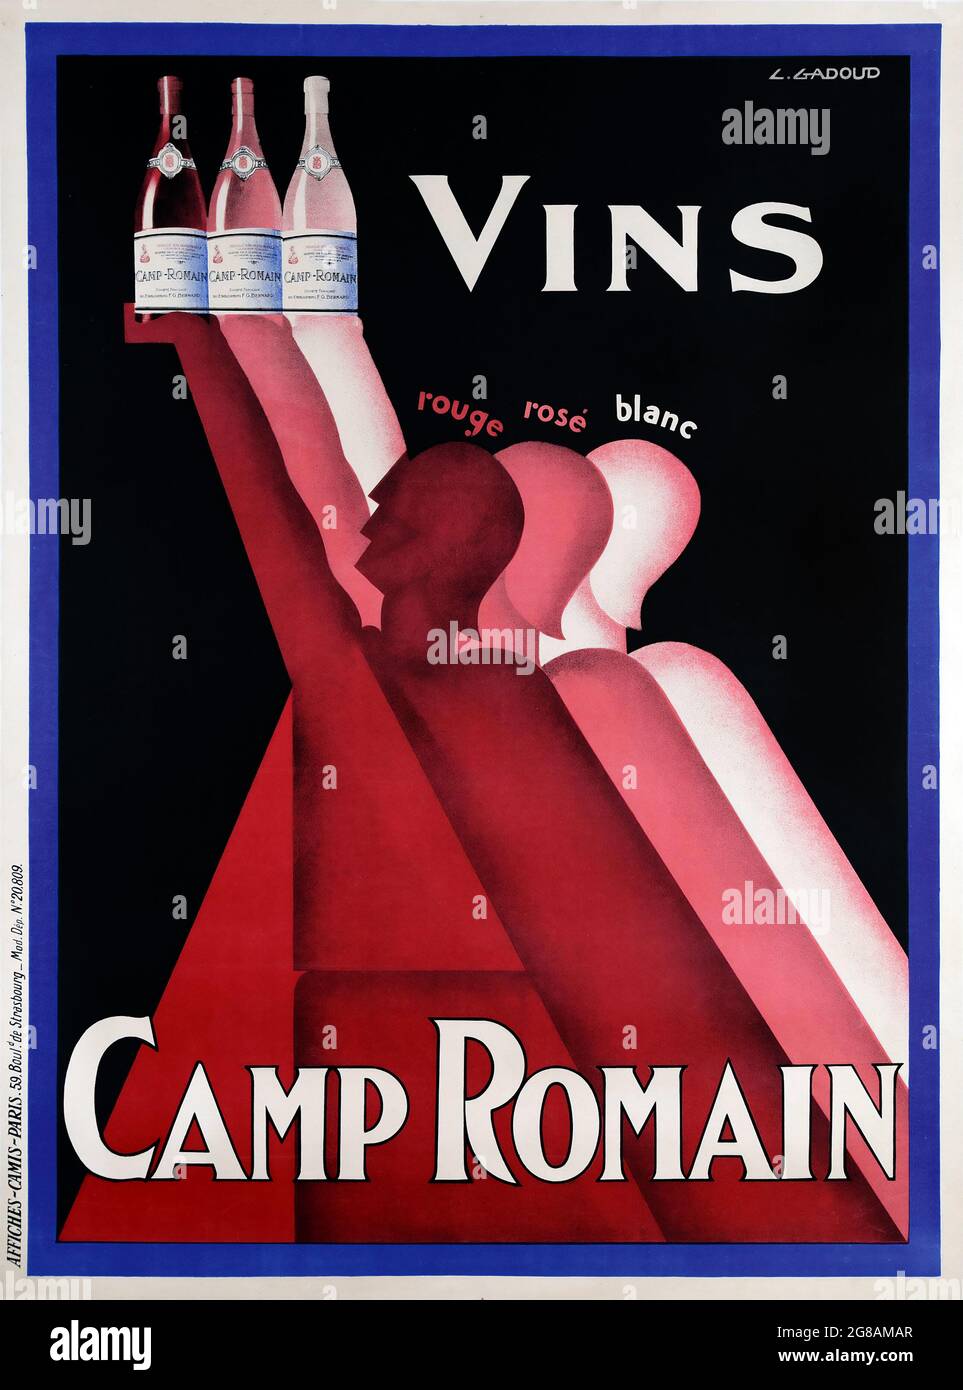 Vintage-Werbeplakat. Vins Camp Romain. Rouge, Rosé, Blanc. Rotwein, Roséwein, Weißwein. Ein Poster im Art-Deco-Stil, gedruckt um 1930. Stockfoto